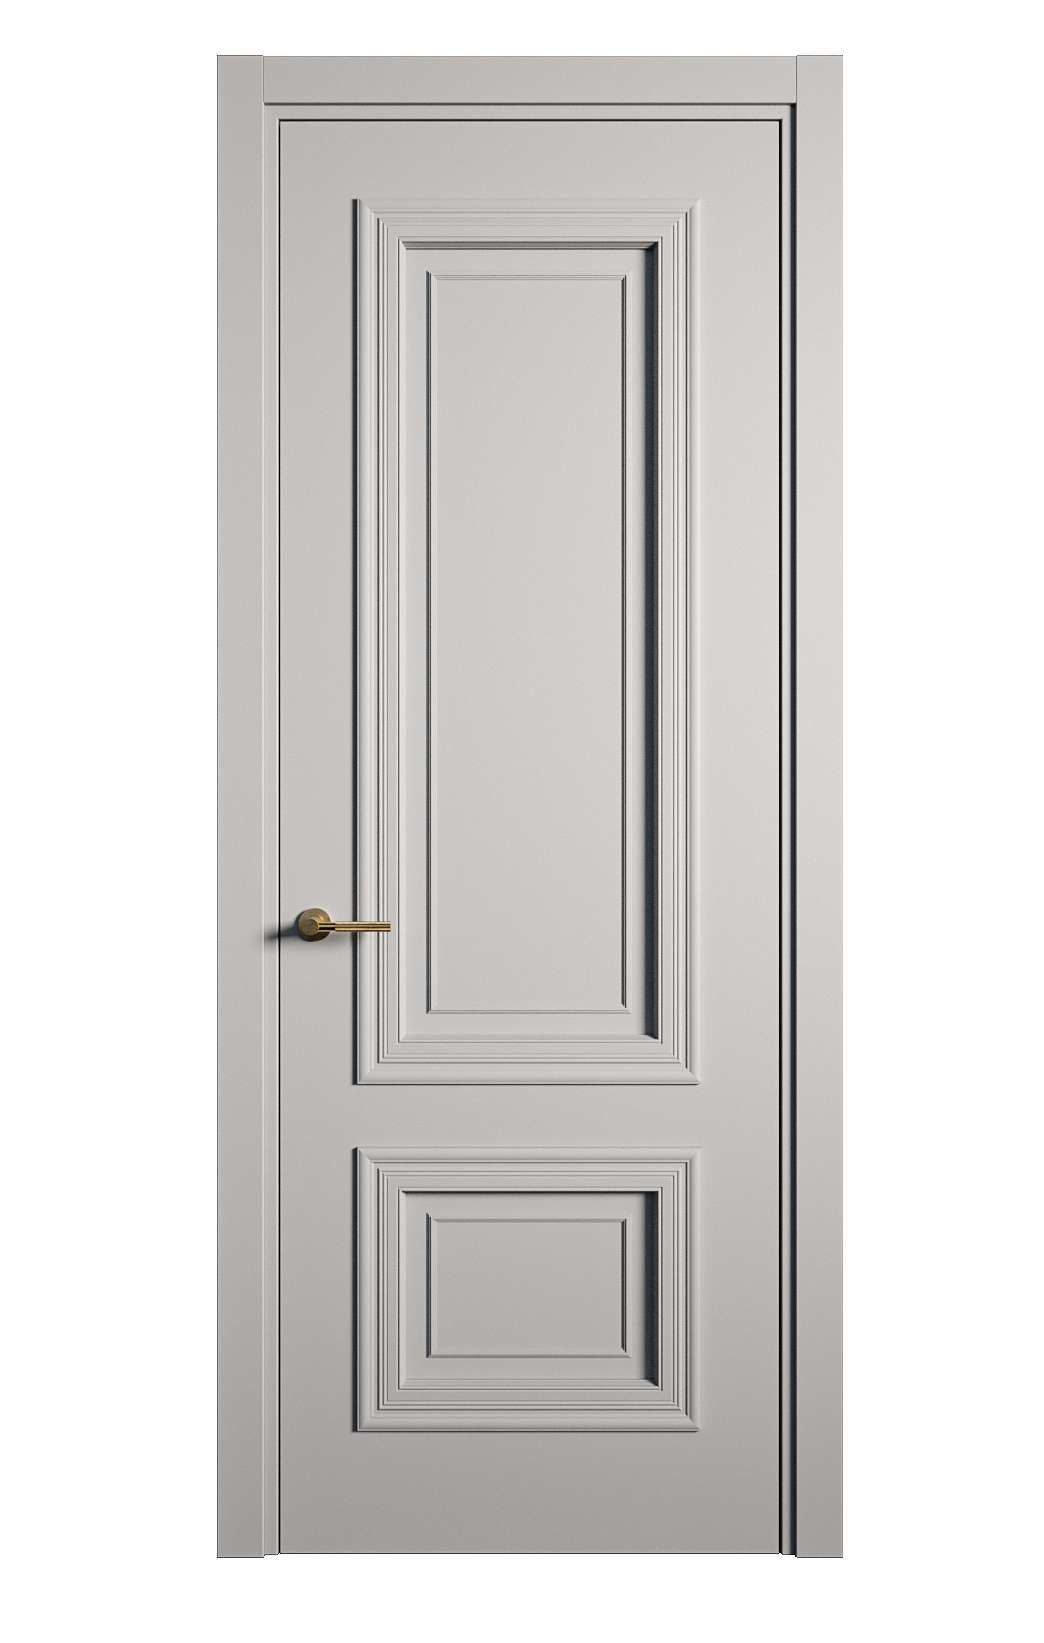 Межкомнатная дверь Мальта-1 глухая эмаль ral 7040 26936